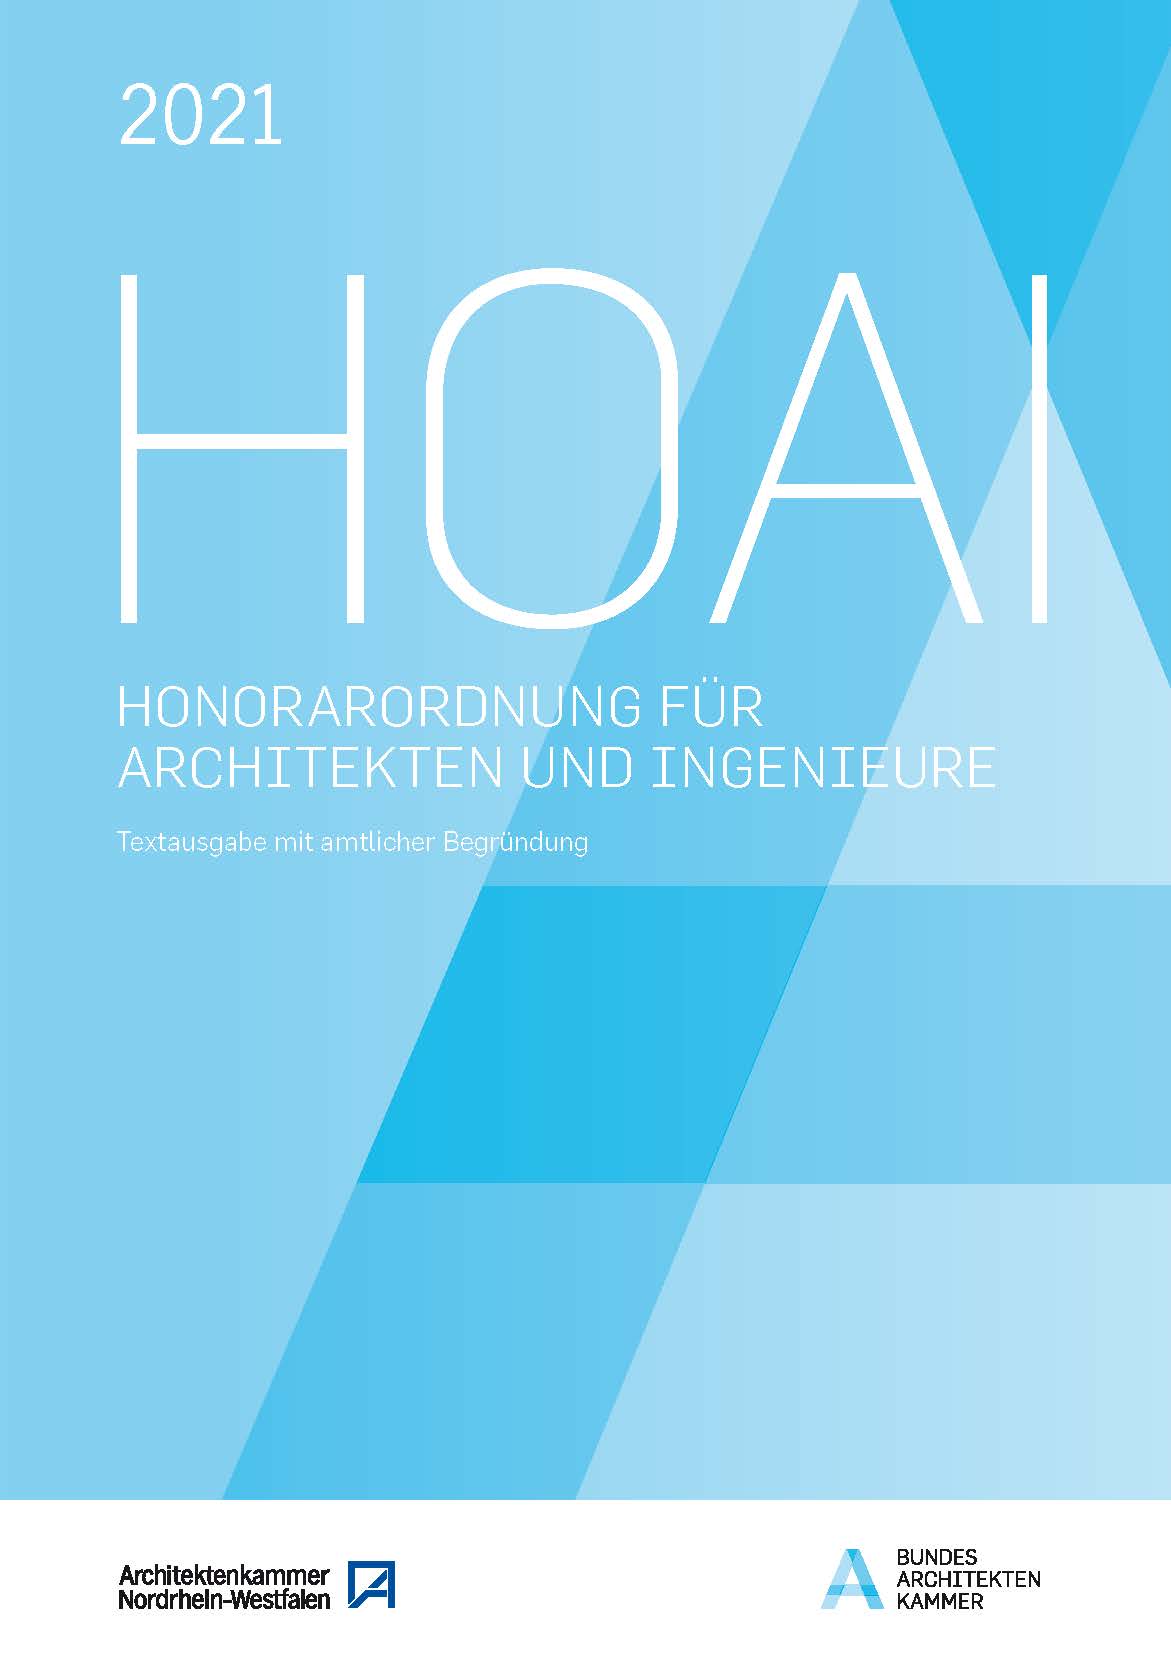 Titel/Umschlag der Broschüre "HOAI 2021 - Textausgabe mit amtlicher Begründung" in Blau mit Großbuchstaben H-O-A-I